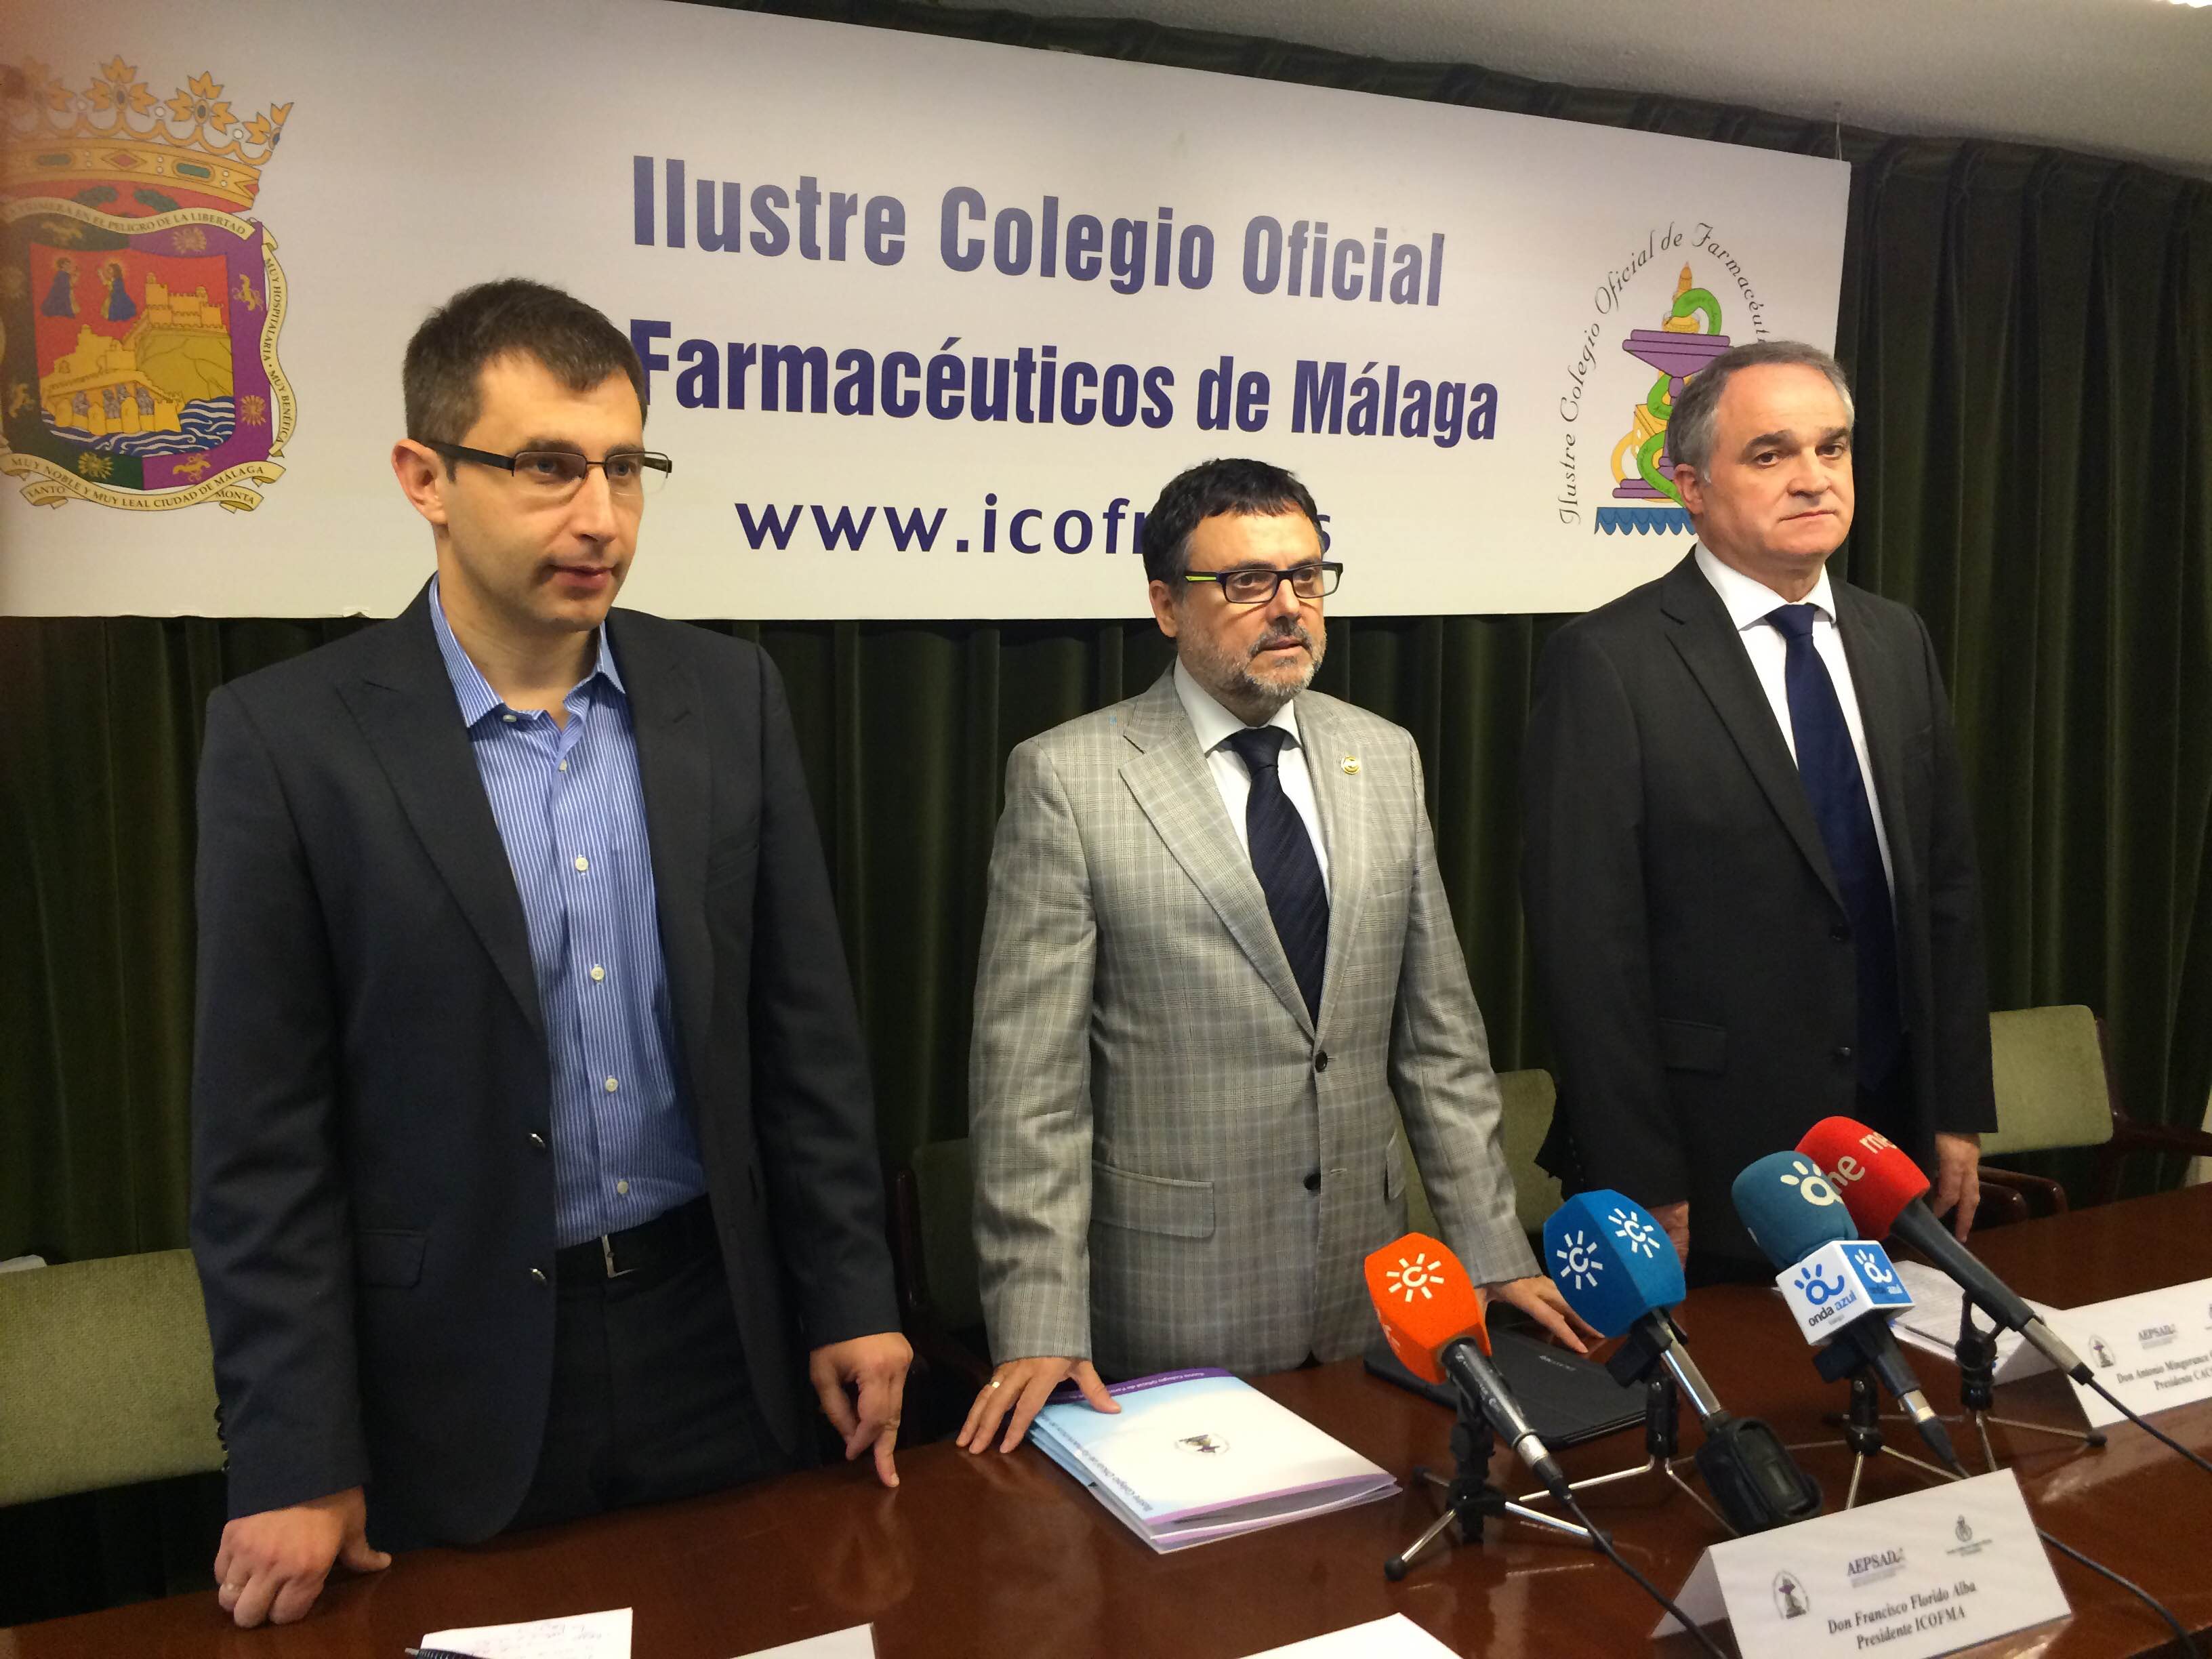 Las oficinas de farmacia de Málaga se unen a una iniciativa pionera para promover la prevención del dopaje en el deporte